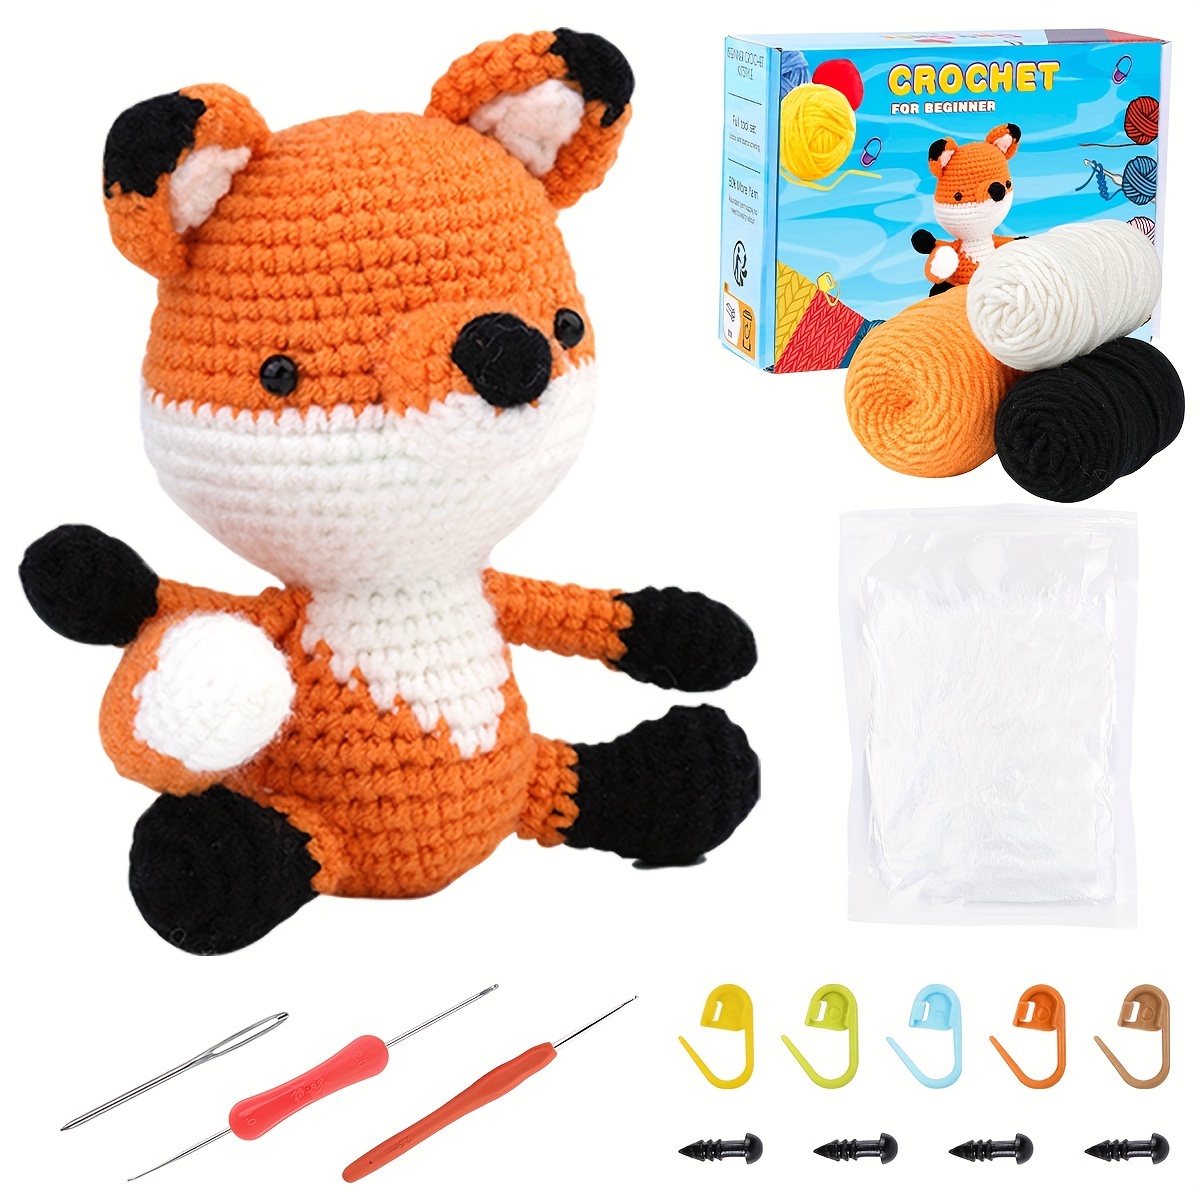 DIY Fox Crochet Starter Kit, Crochet Kit For Beginners, Crochet Starter Kit  For Adults With Crochet Hooks, Yarn, Polyester, Stitching Markers, Plastic